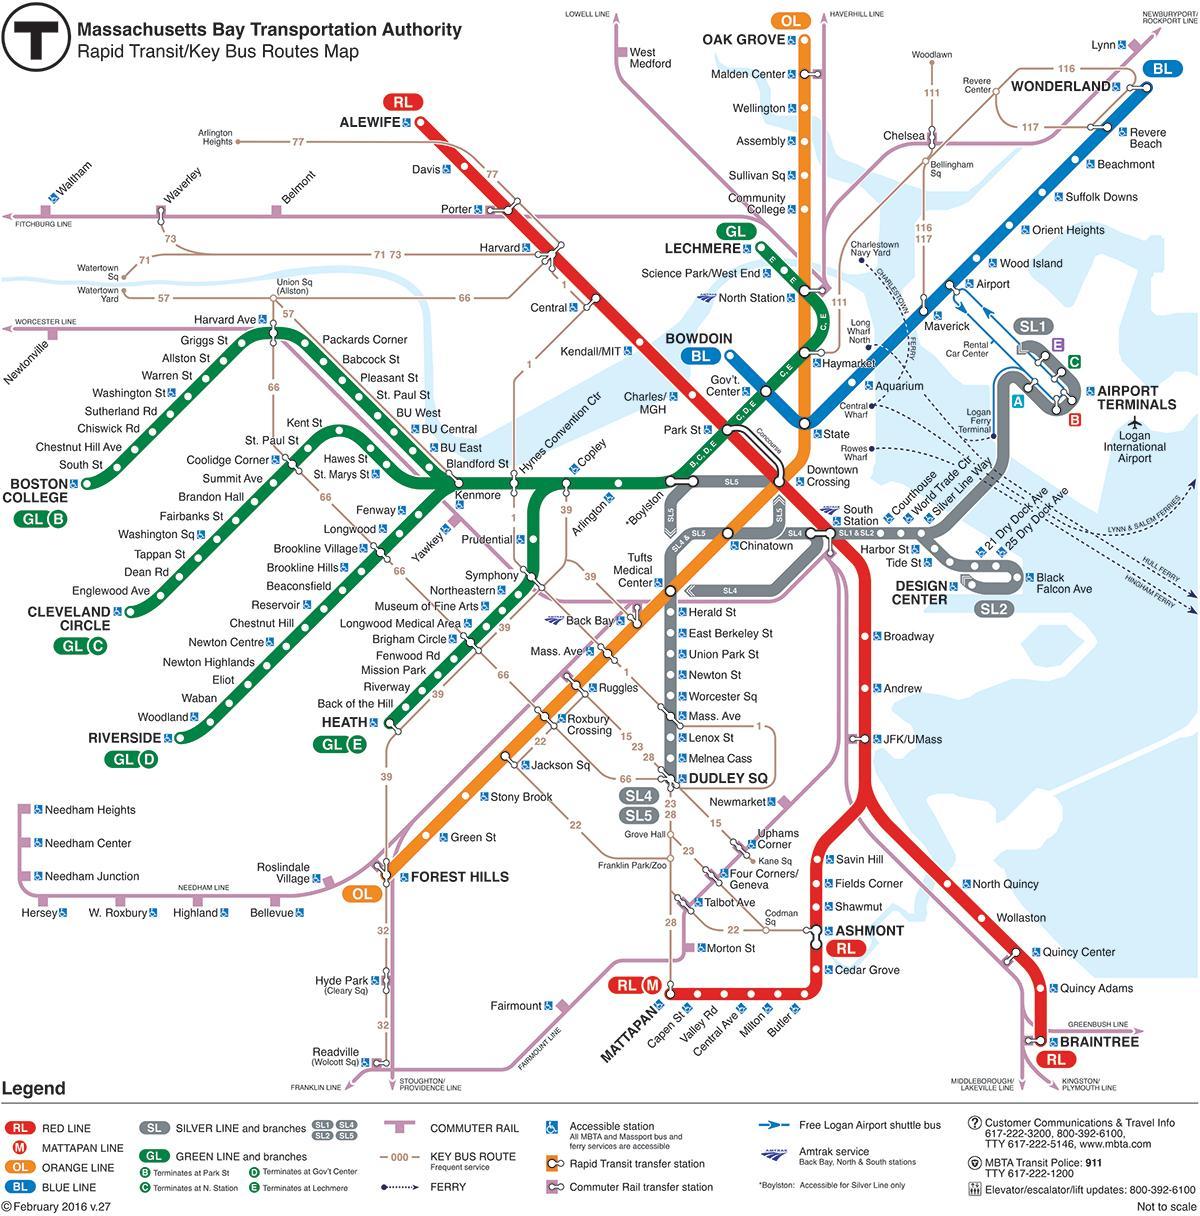 T ferroviaria di Boston mappa